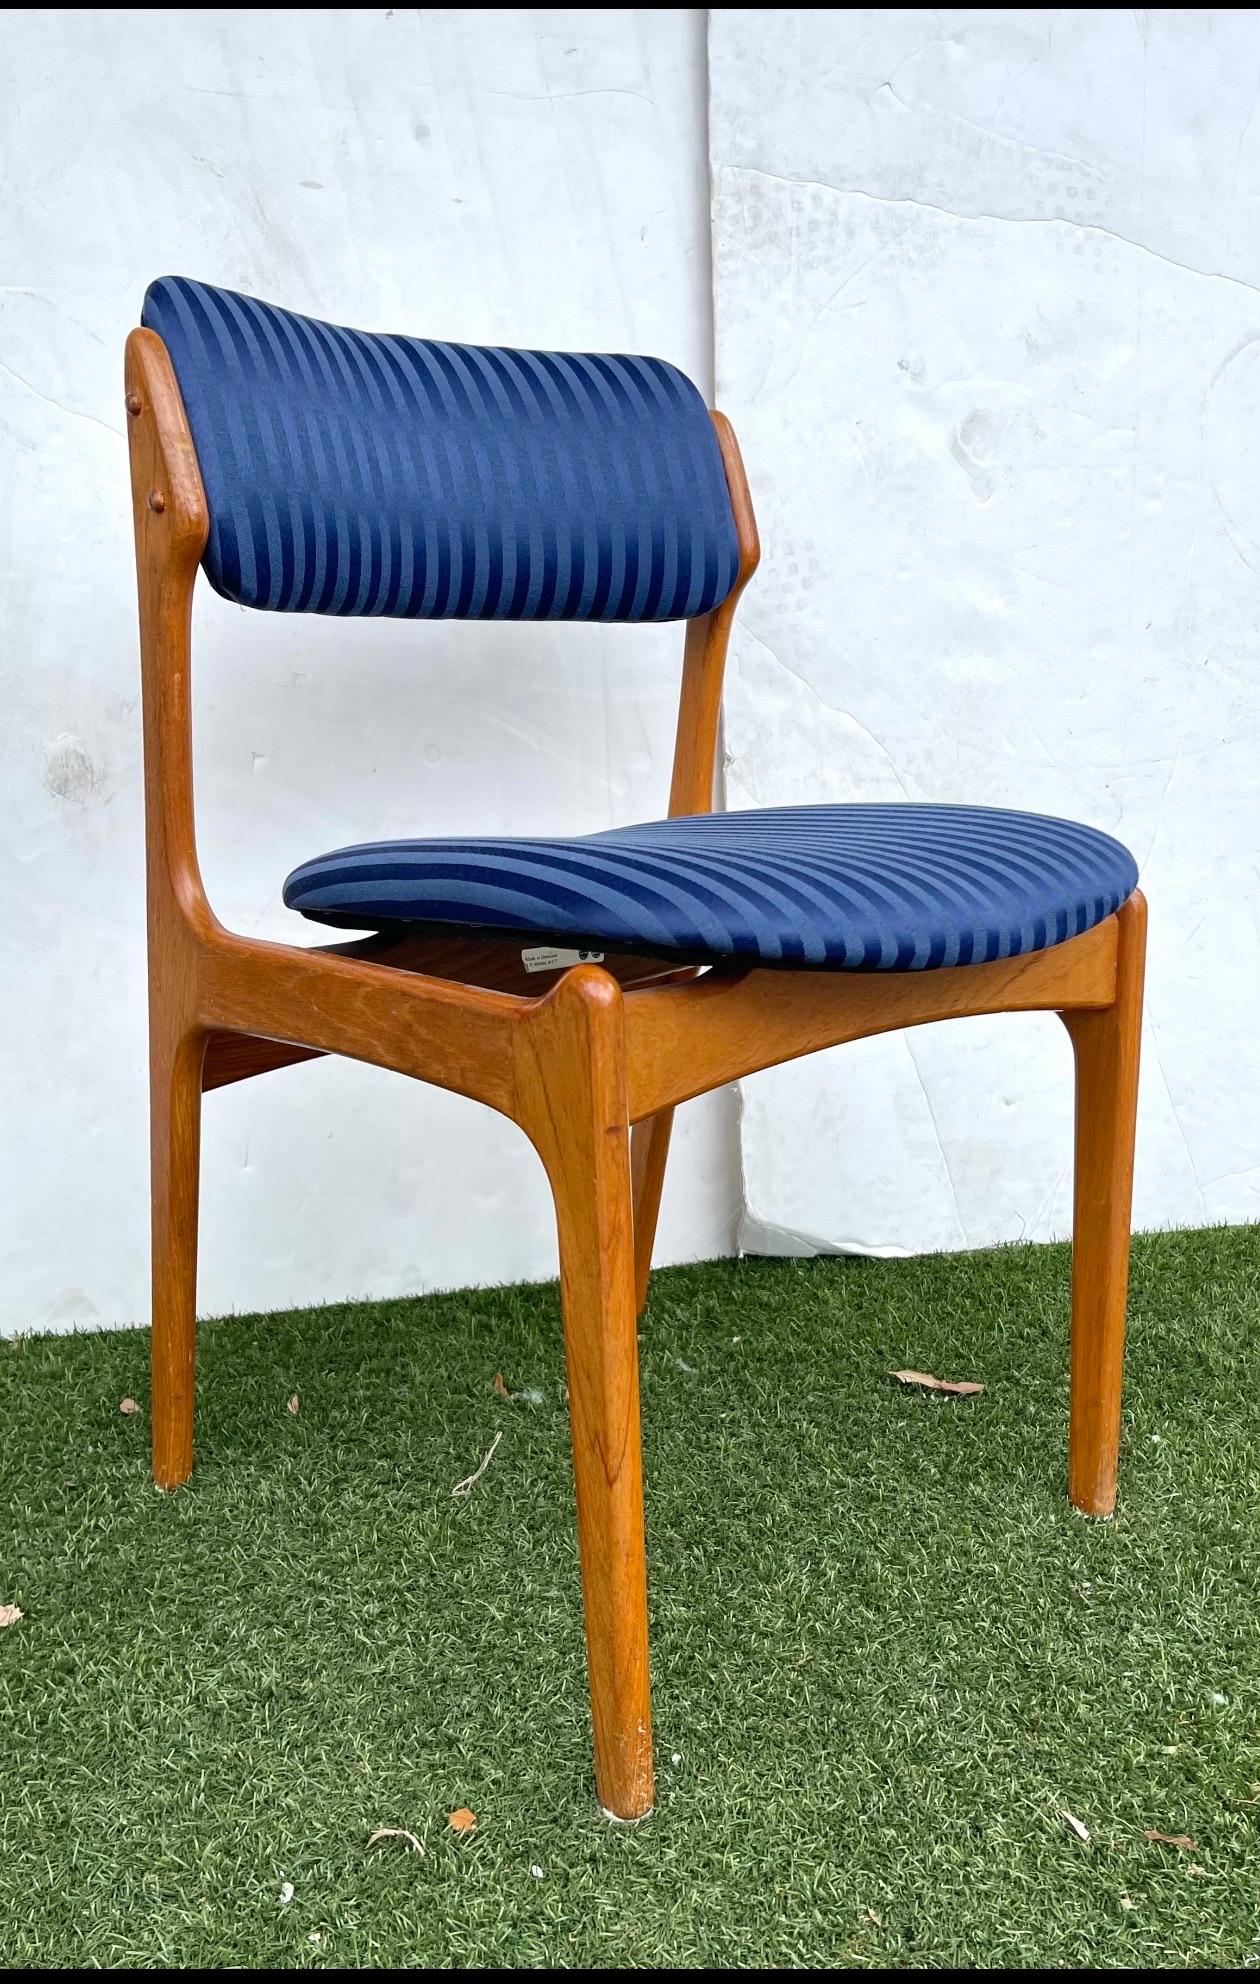 Un ensemble de 4 chaises en teck par Erik Buch pour O.D. Mobler A-S
Les chaises ont un aspect sculptural merveilleux. 
Le design est mis en valeur par l'aspect presque flottant des coussins sur le cadre.
La hauteur du siège est de 18